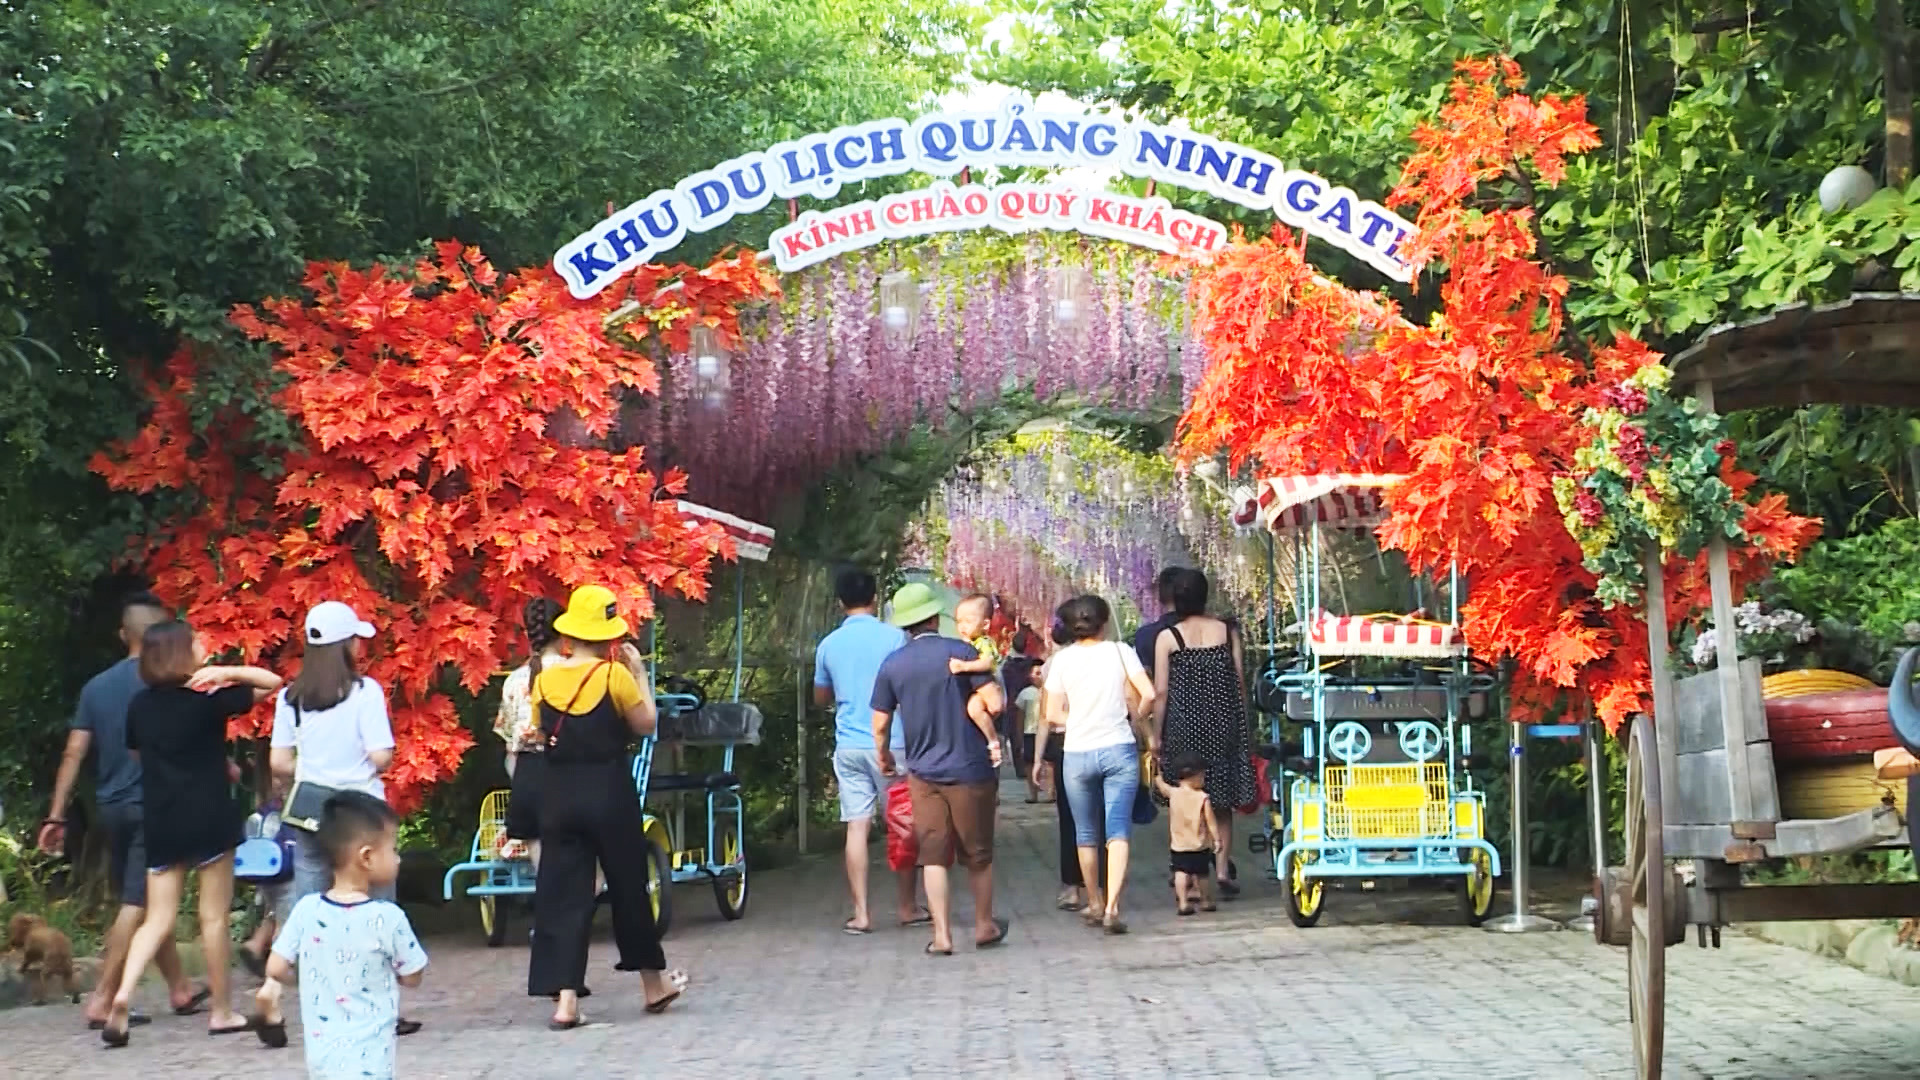 Khu Du lịch Quảng Ninh Gate cũng là địa điểm thu hút đông đảo du khách tới thăm quan...